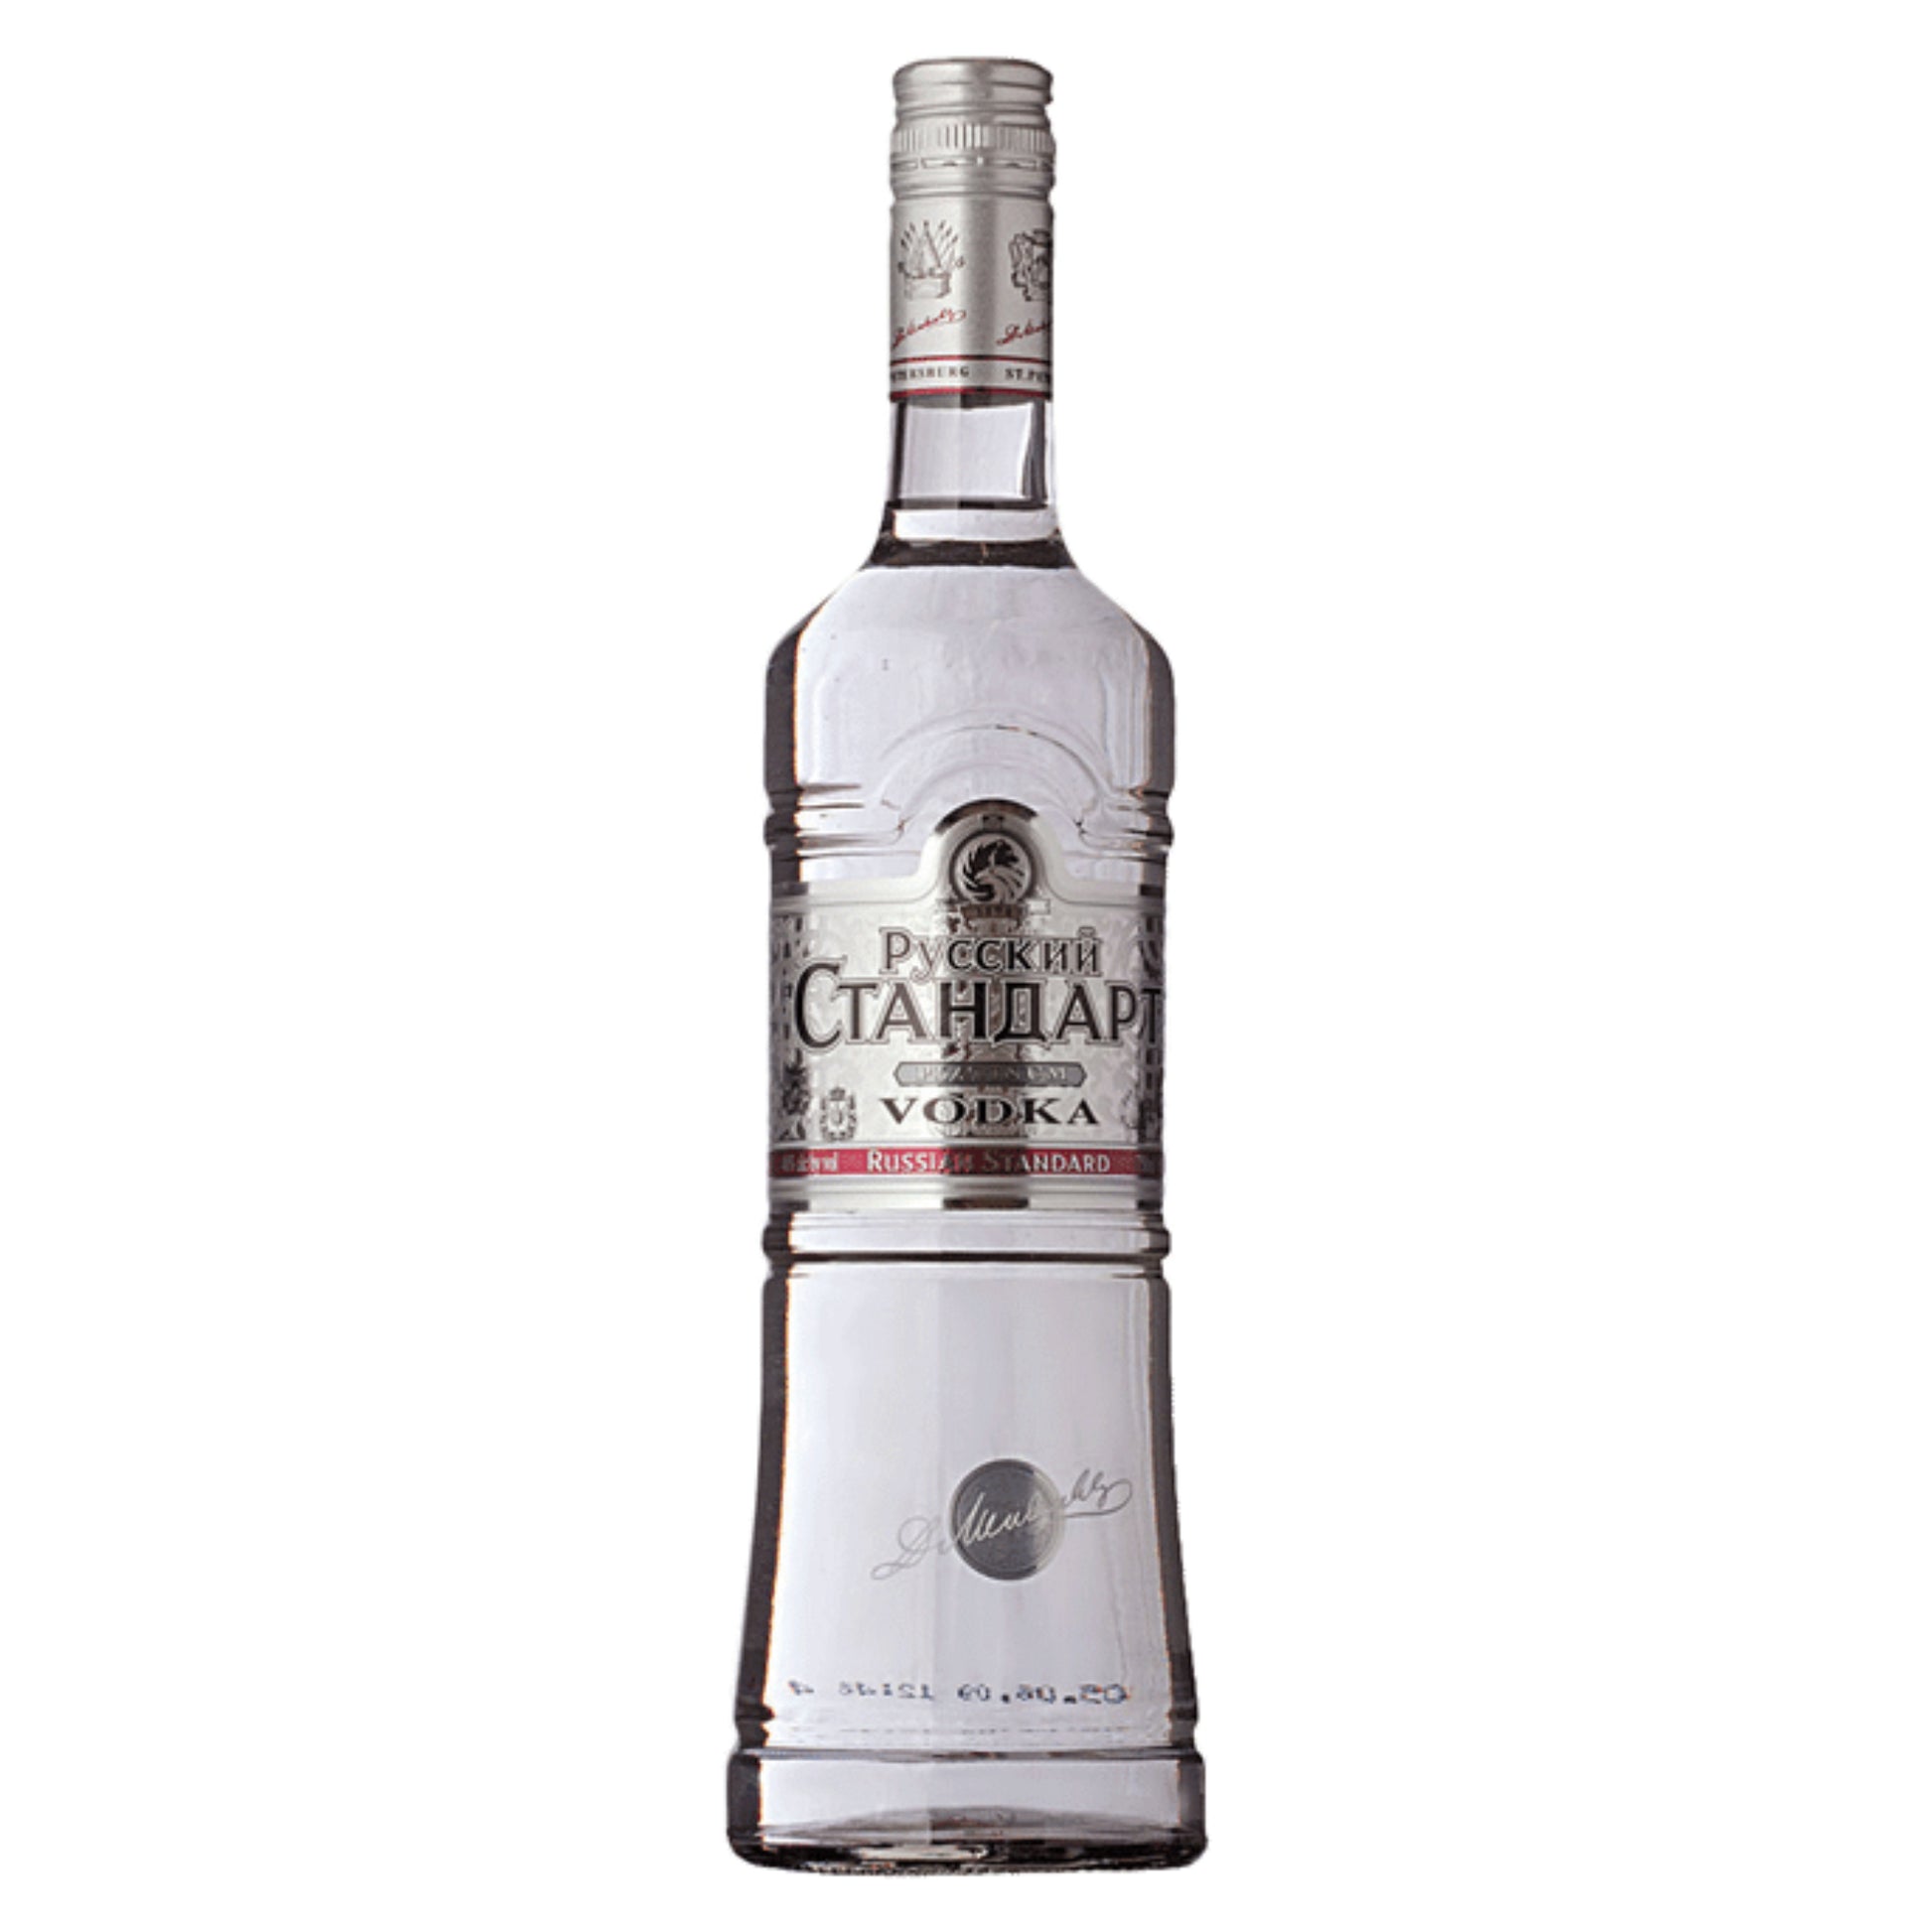 Russian Standard Platinum - Liquor Geeks